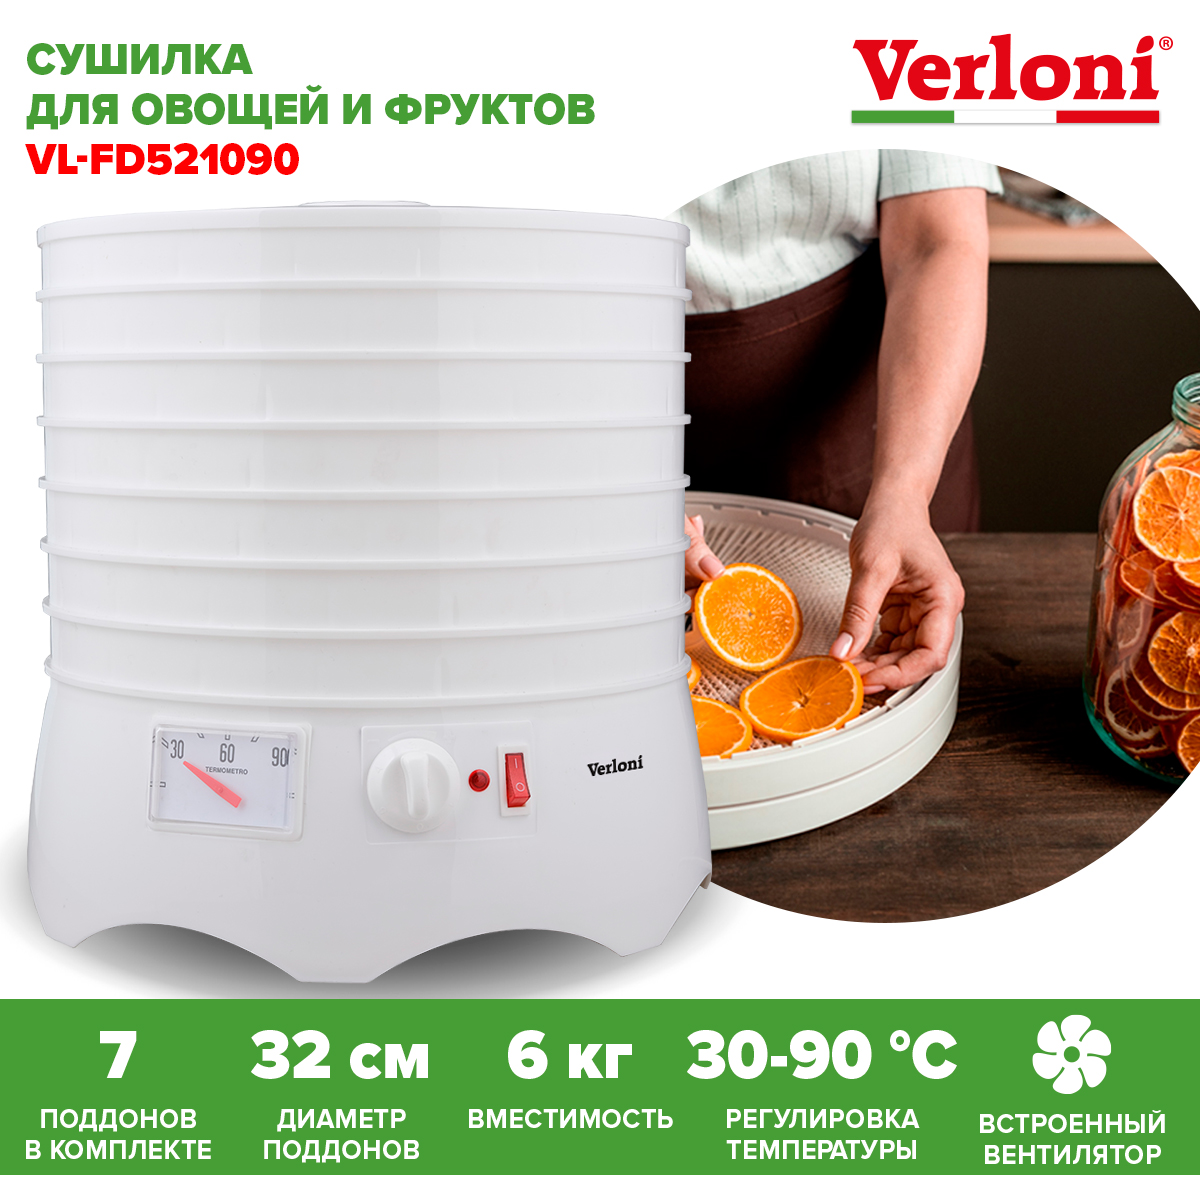 Сушилка для овощей и фруктов Verloni VL-FD521090 белая сушилка для овощей и фруктов bbk bdh202m белая